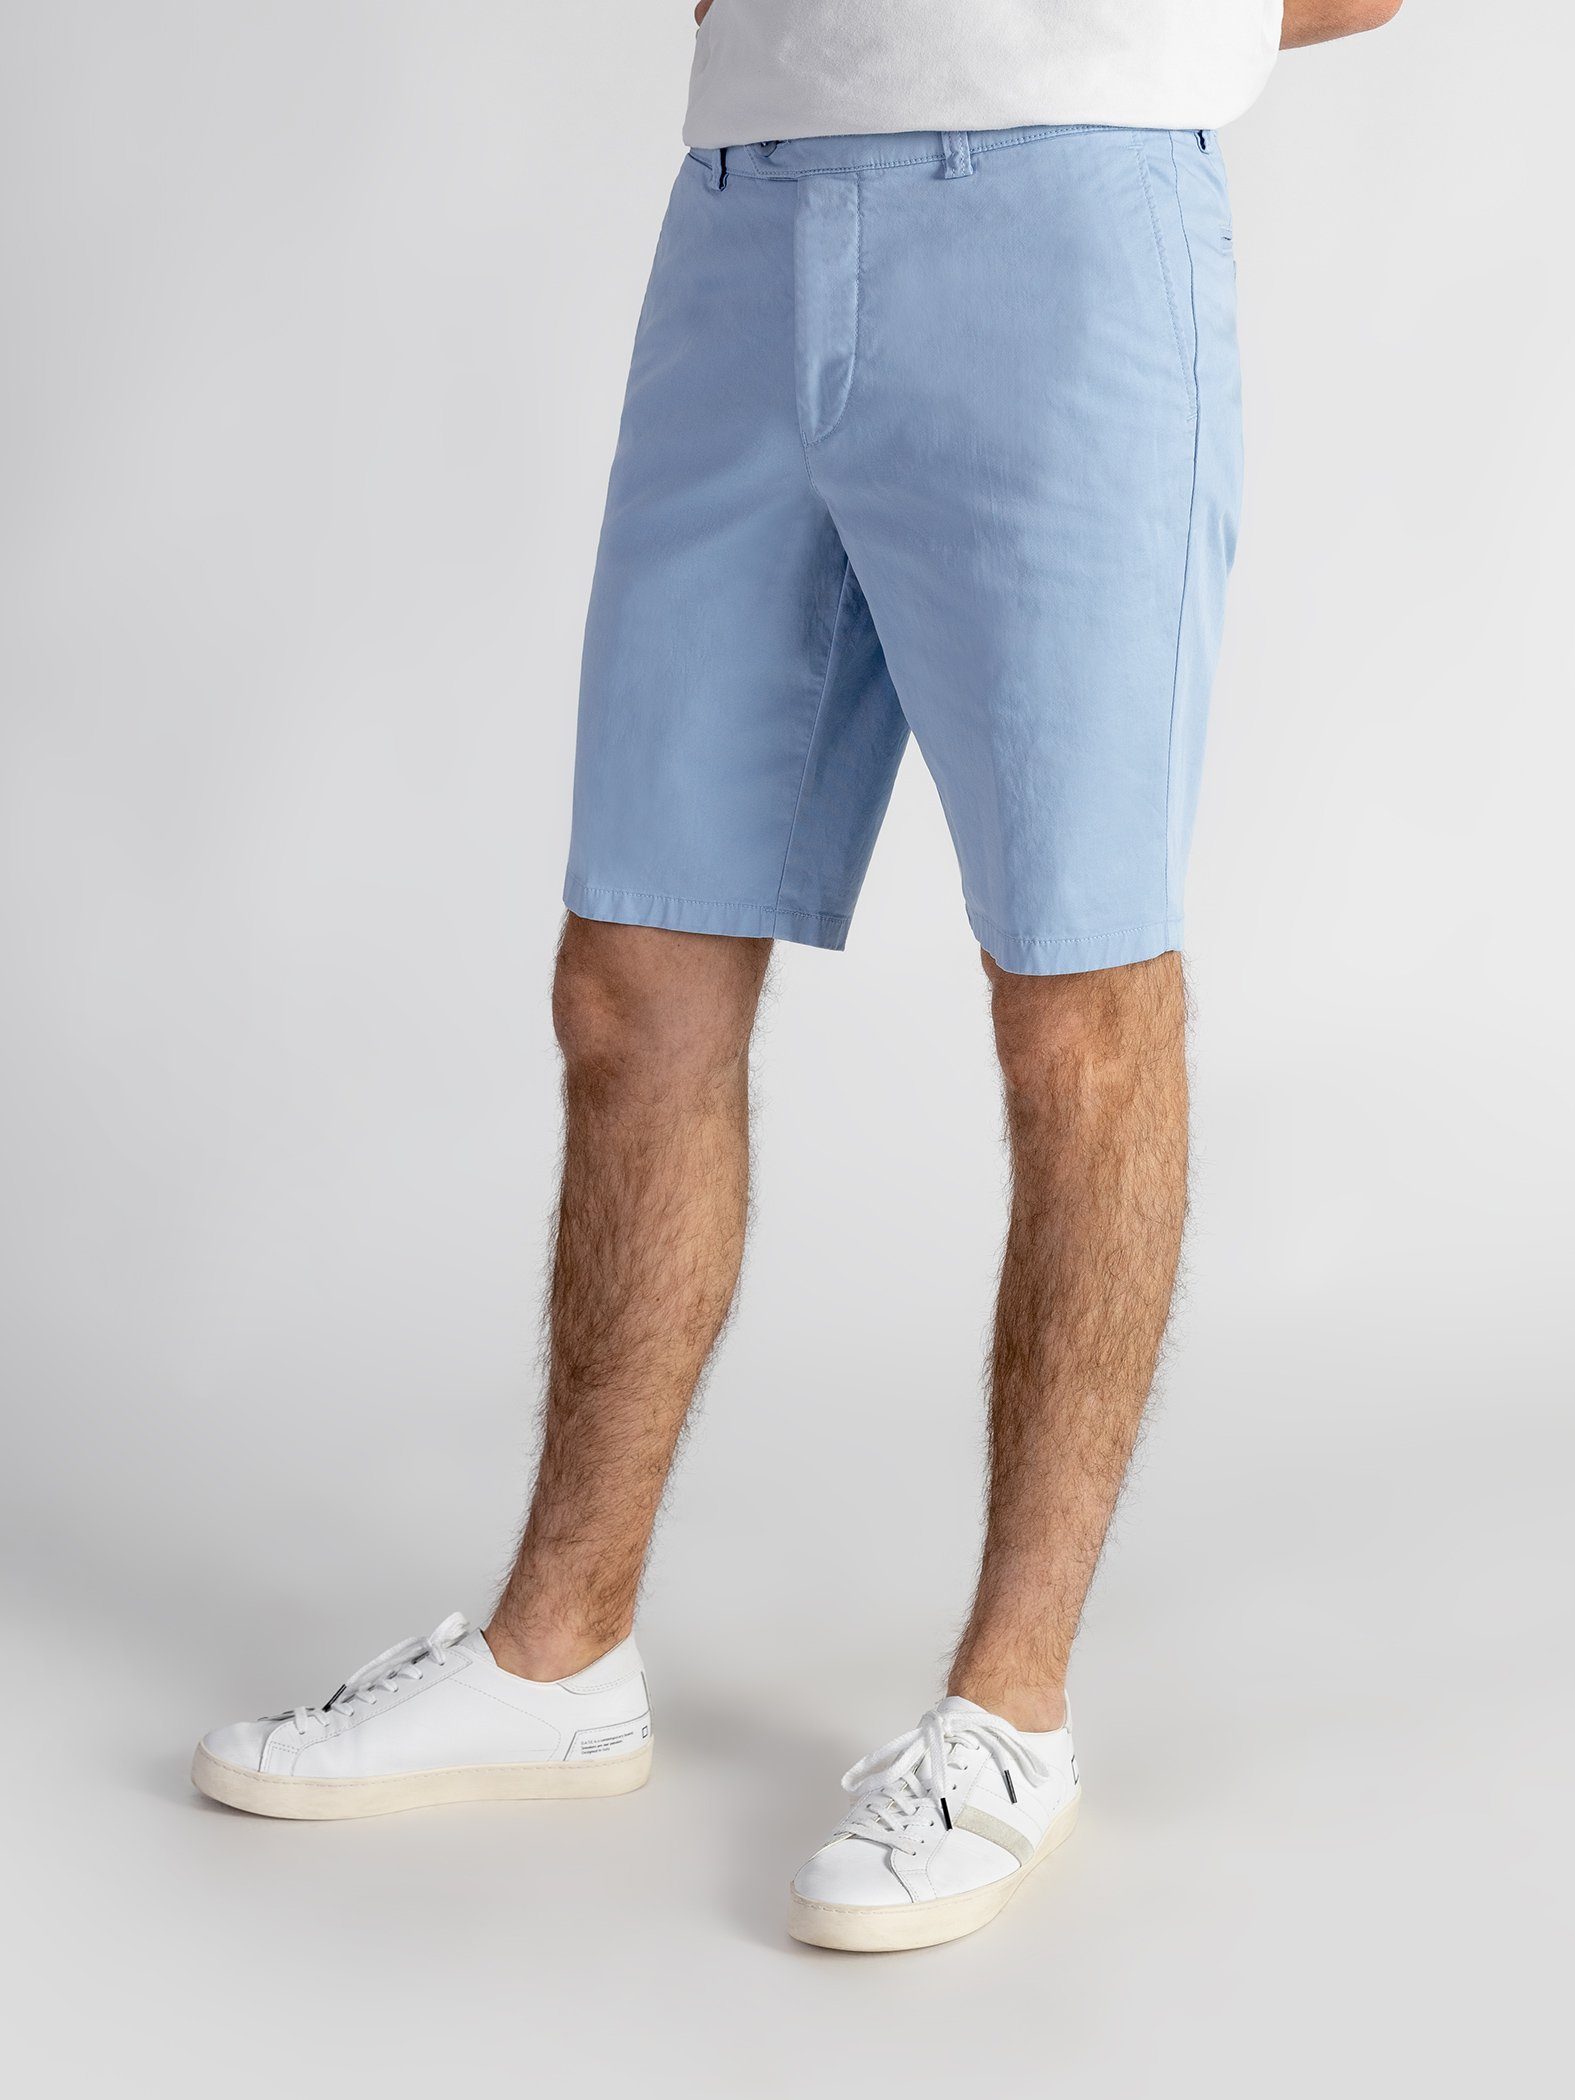 Shorts Bund, Shorts GOTS-zertifiziert hellblau elastischem mit Farbauswahl, TwoMates